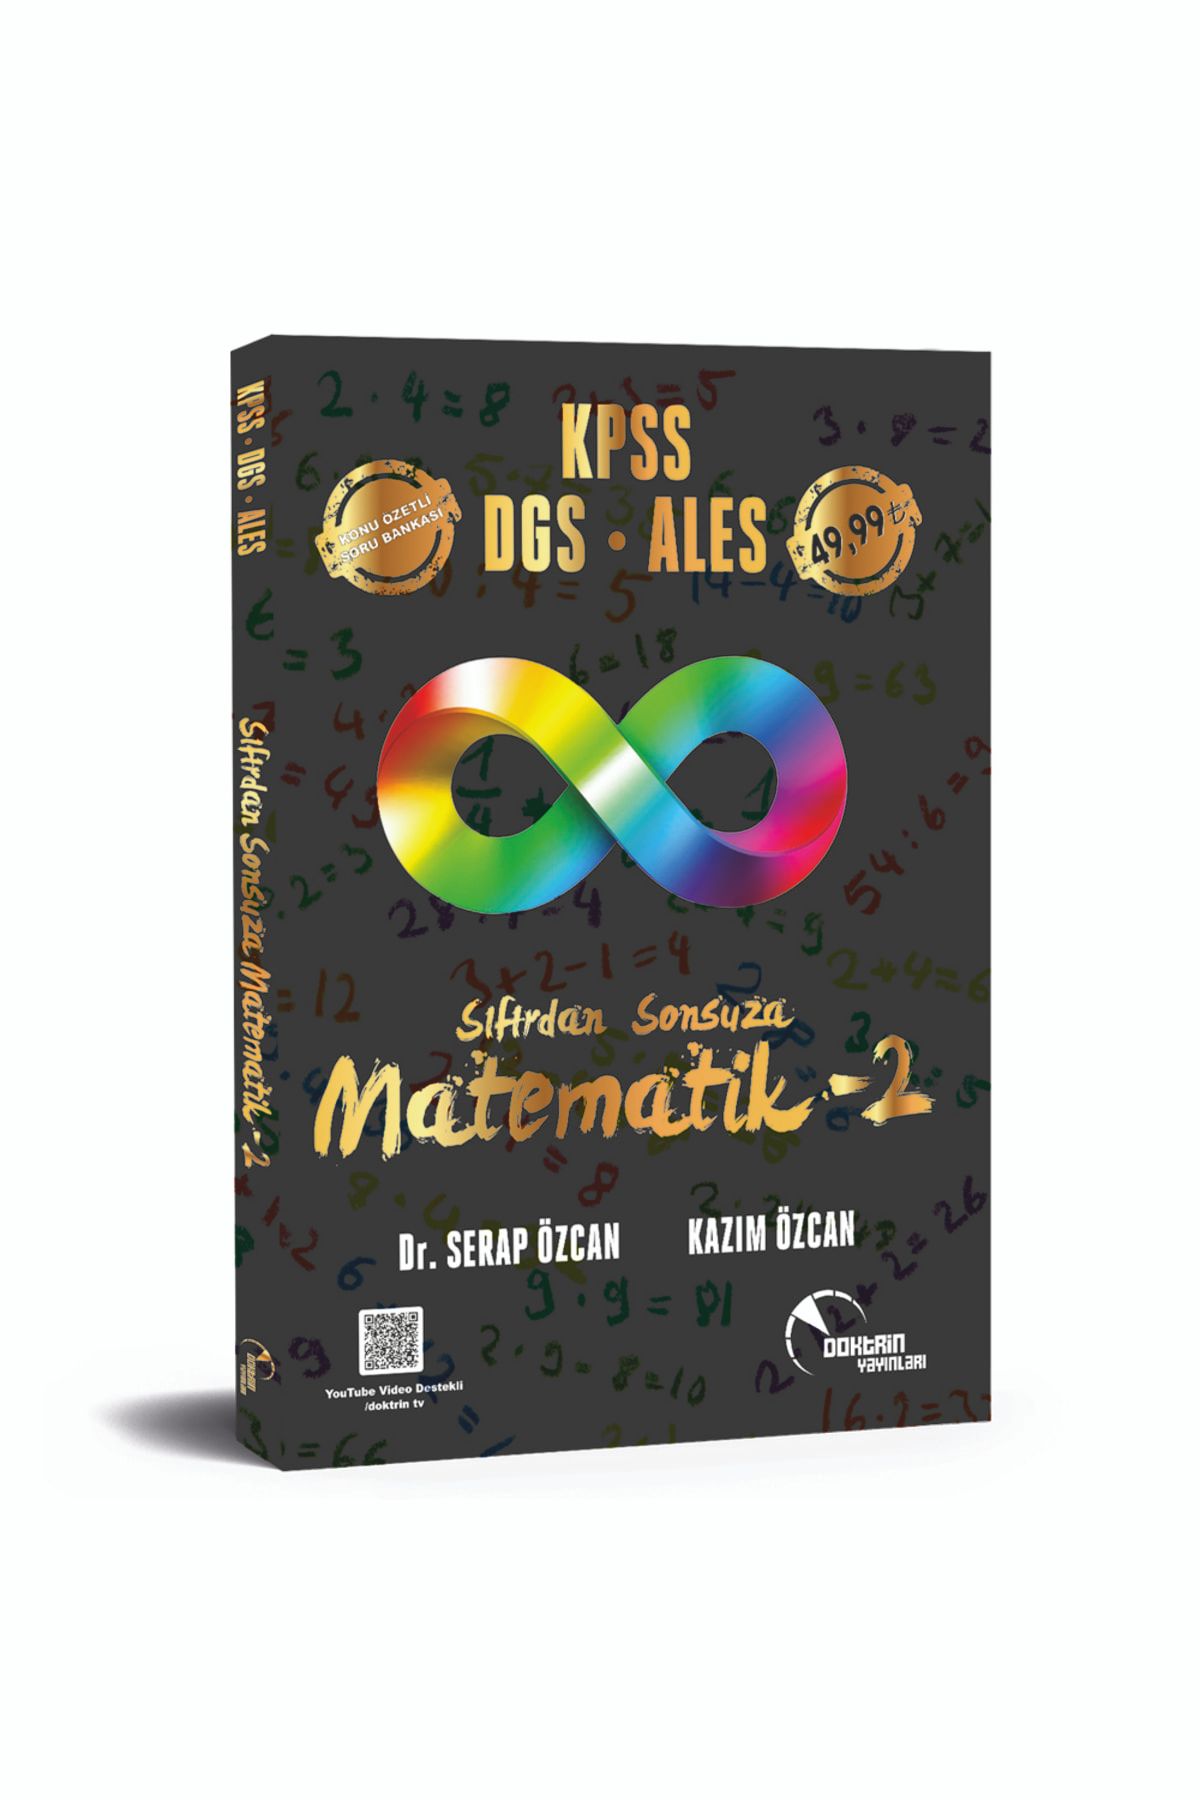 Doktrin Yayınları Kpss / Dgs / Ales Sıfırdan Sonsuza Matematik-2 (2. CİLT)